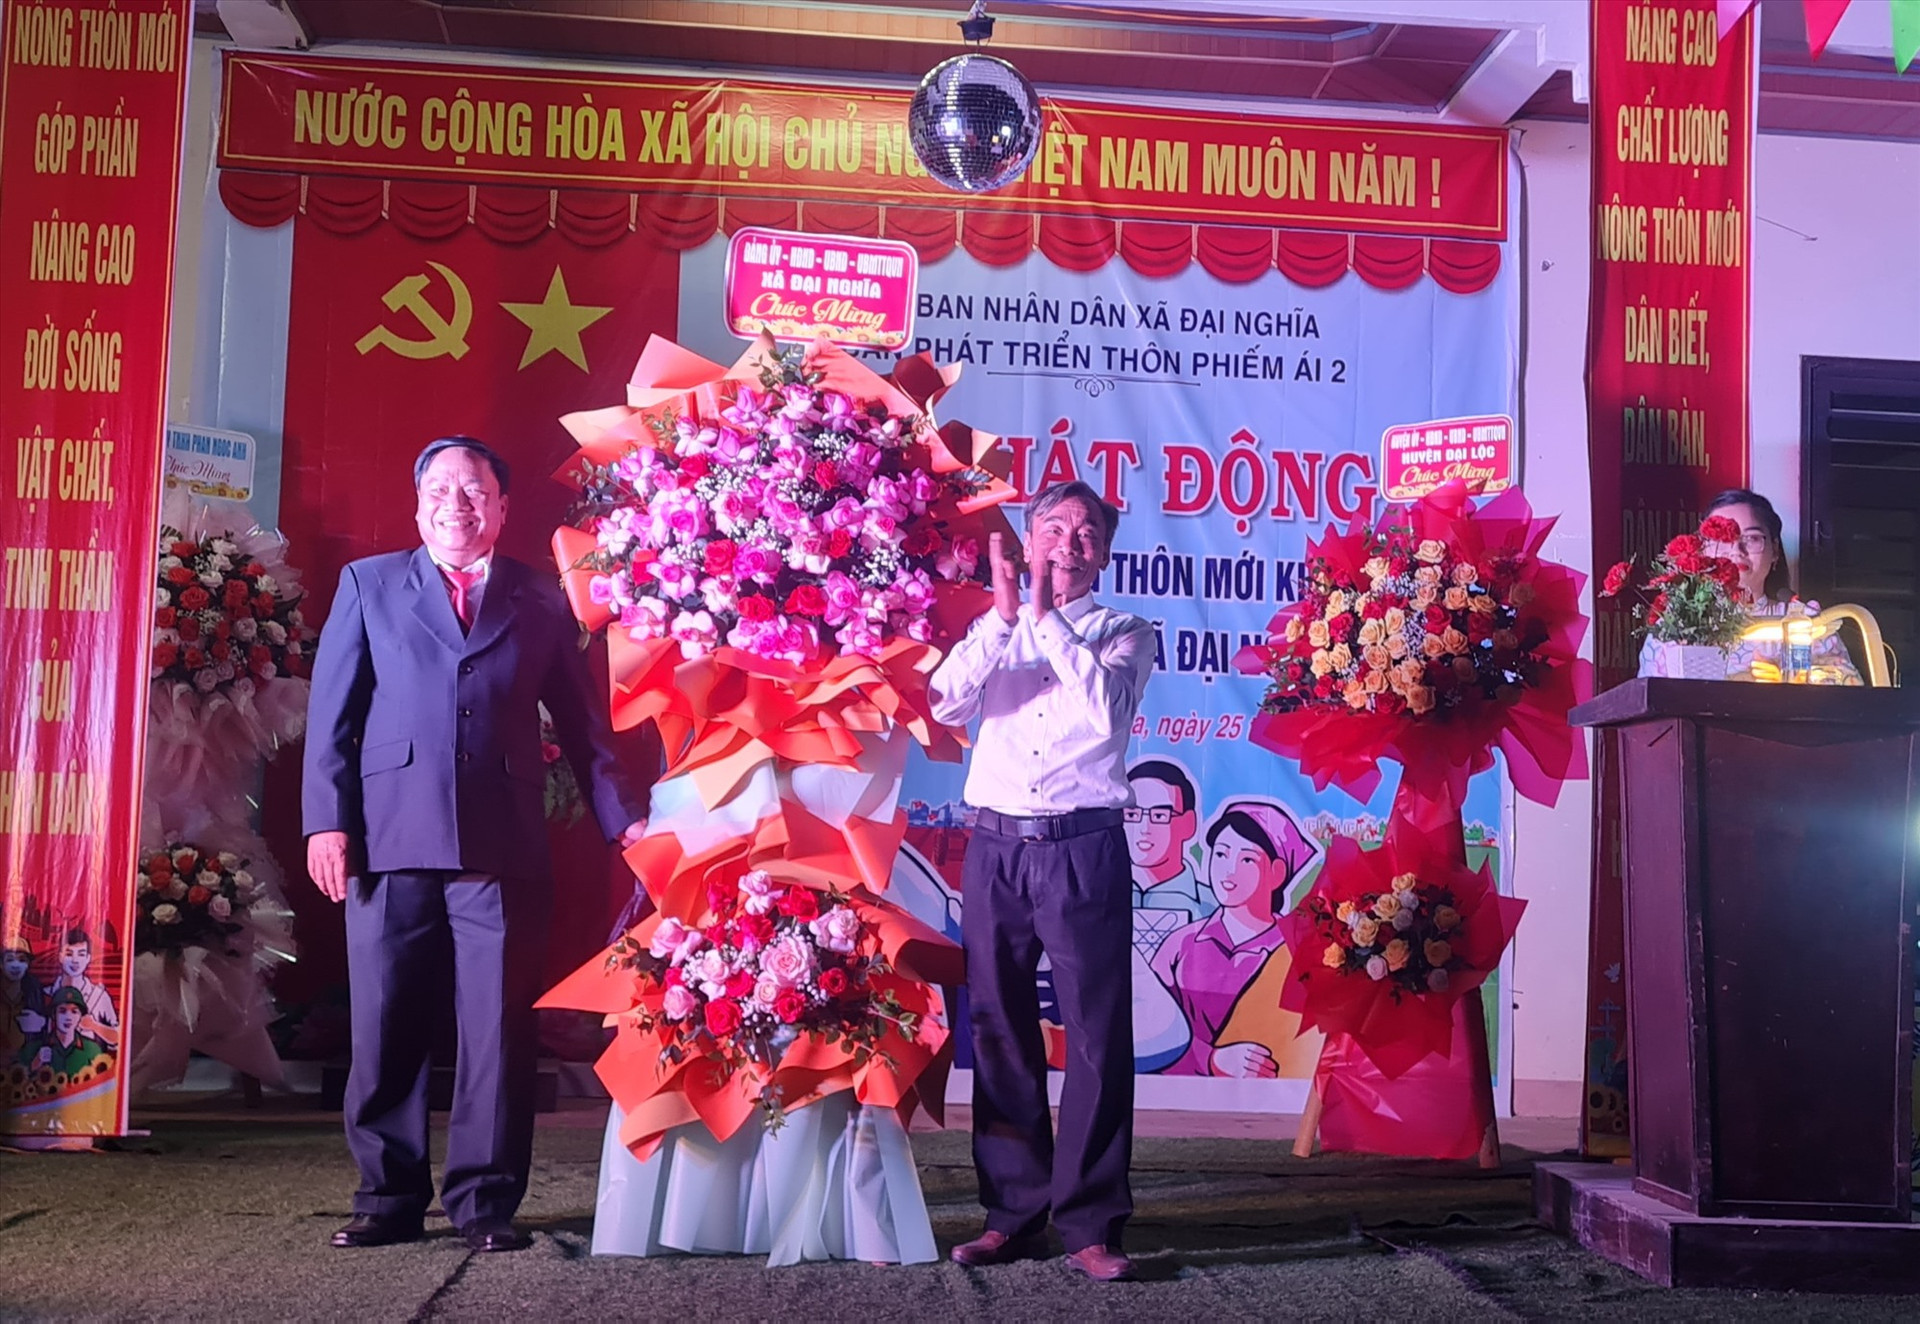 Lãnh đạo xã Đại Nghĩa trao tặng hoa cho Ban dân chính và nhân dân thôn Phiếm Ái 2. Ảnh: H.L